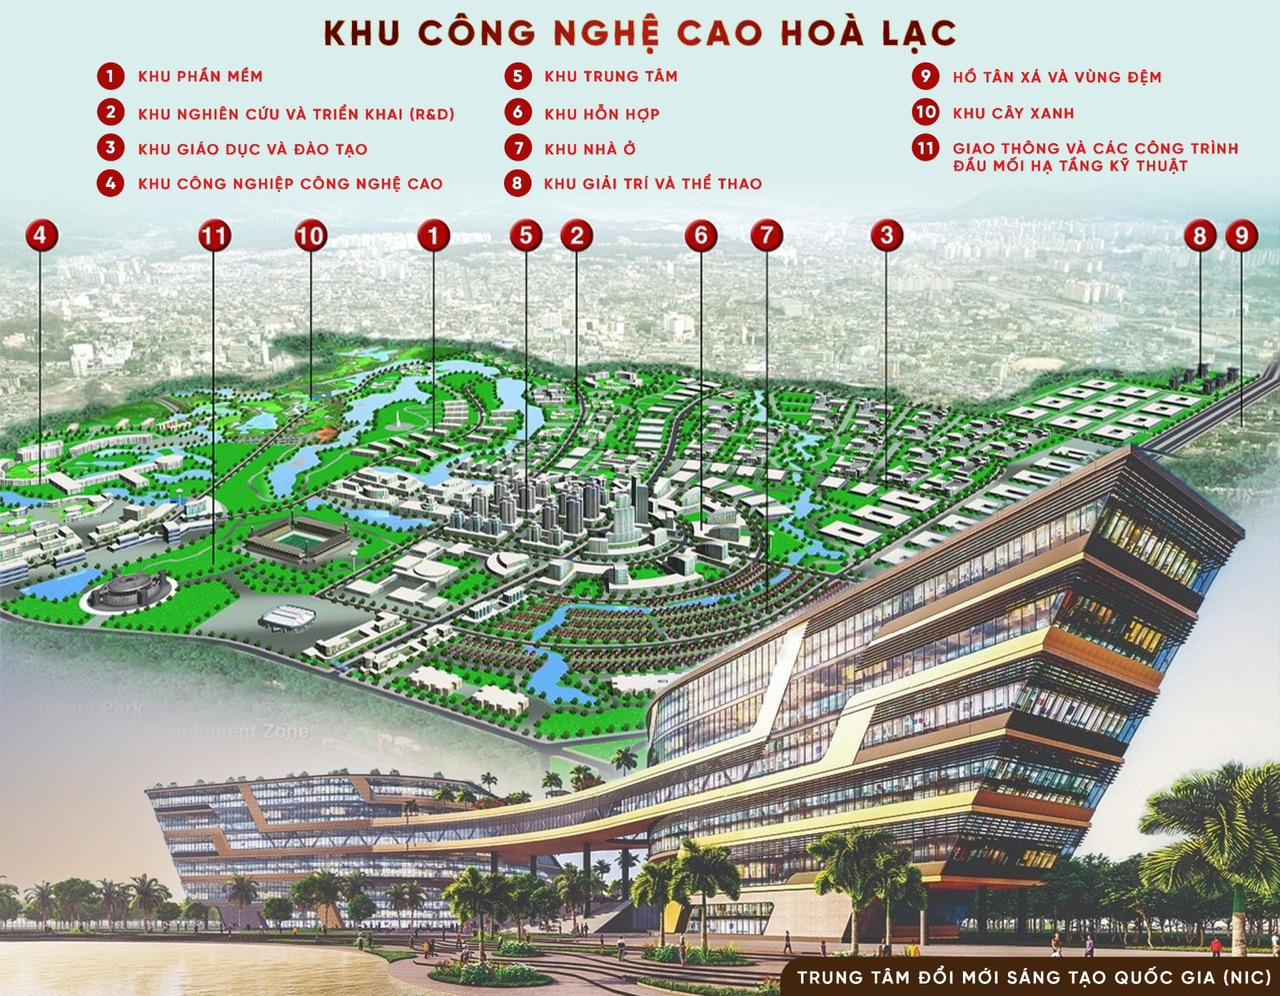 Hà Nội thành lập 2 thành phố mới tại Hòa Lạc và Sơn Tây - Ba Vì, thời của bất động sản phía Tây đã đến?- Ảnh 2.